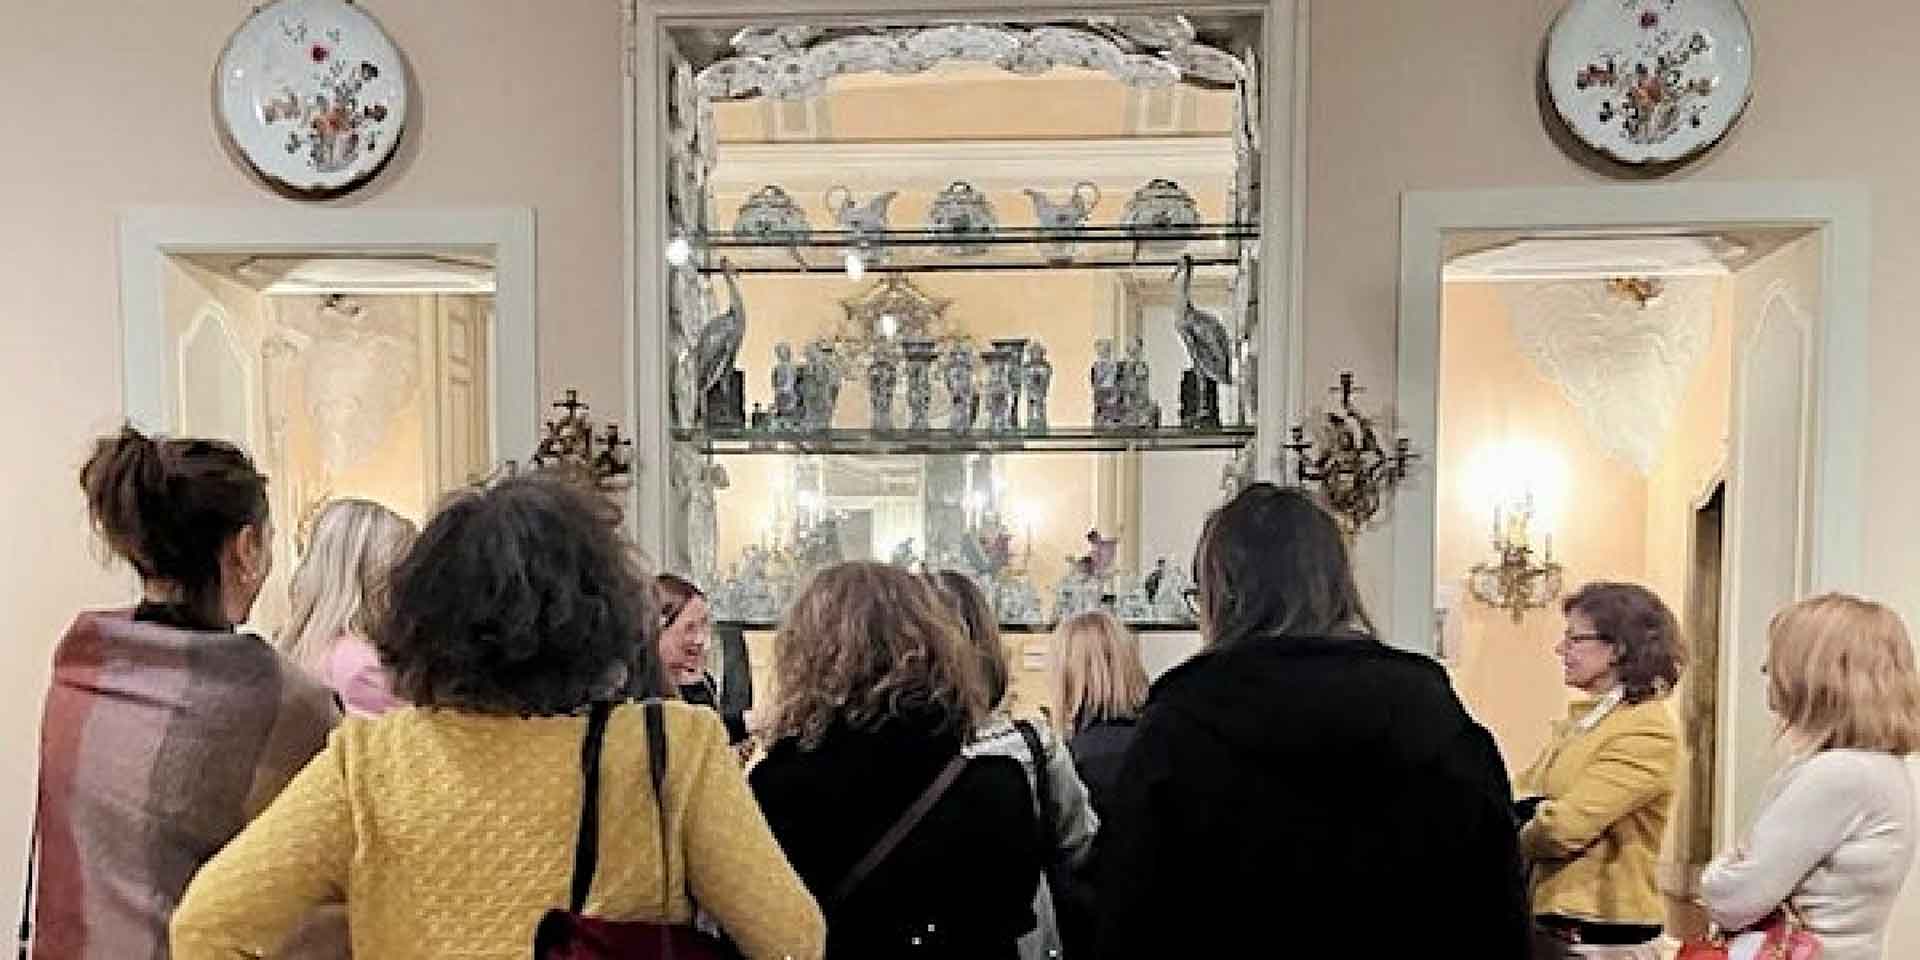 Un gruppo di persone osserva interessato degli oggetti esposti in una vetrina all'interno di una stanza decorata con specchi e piatti ornamentali.